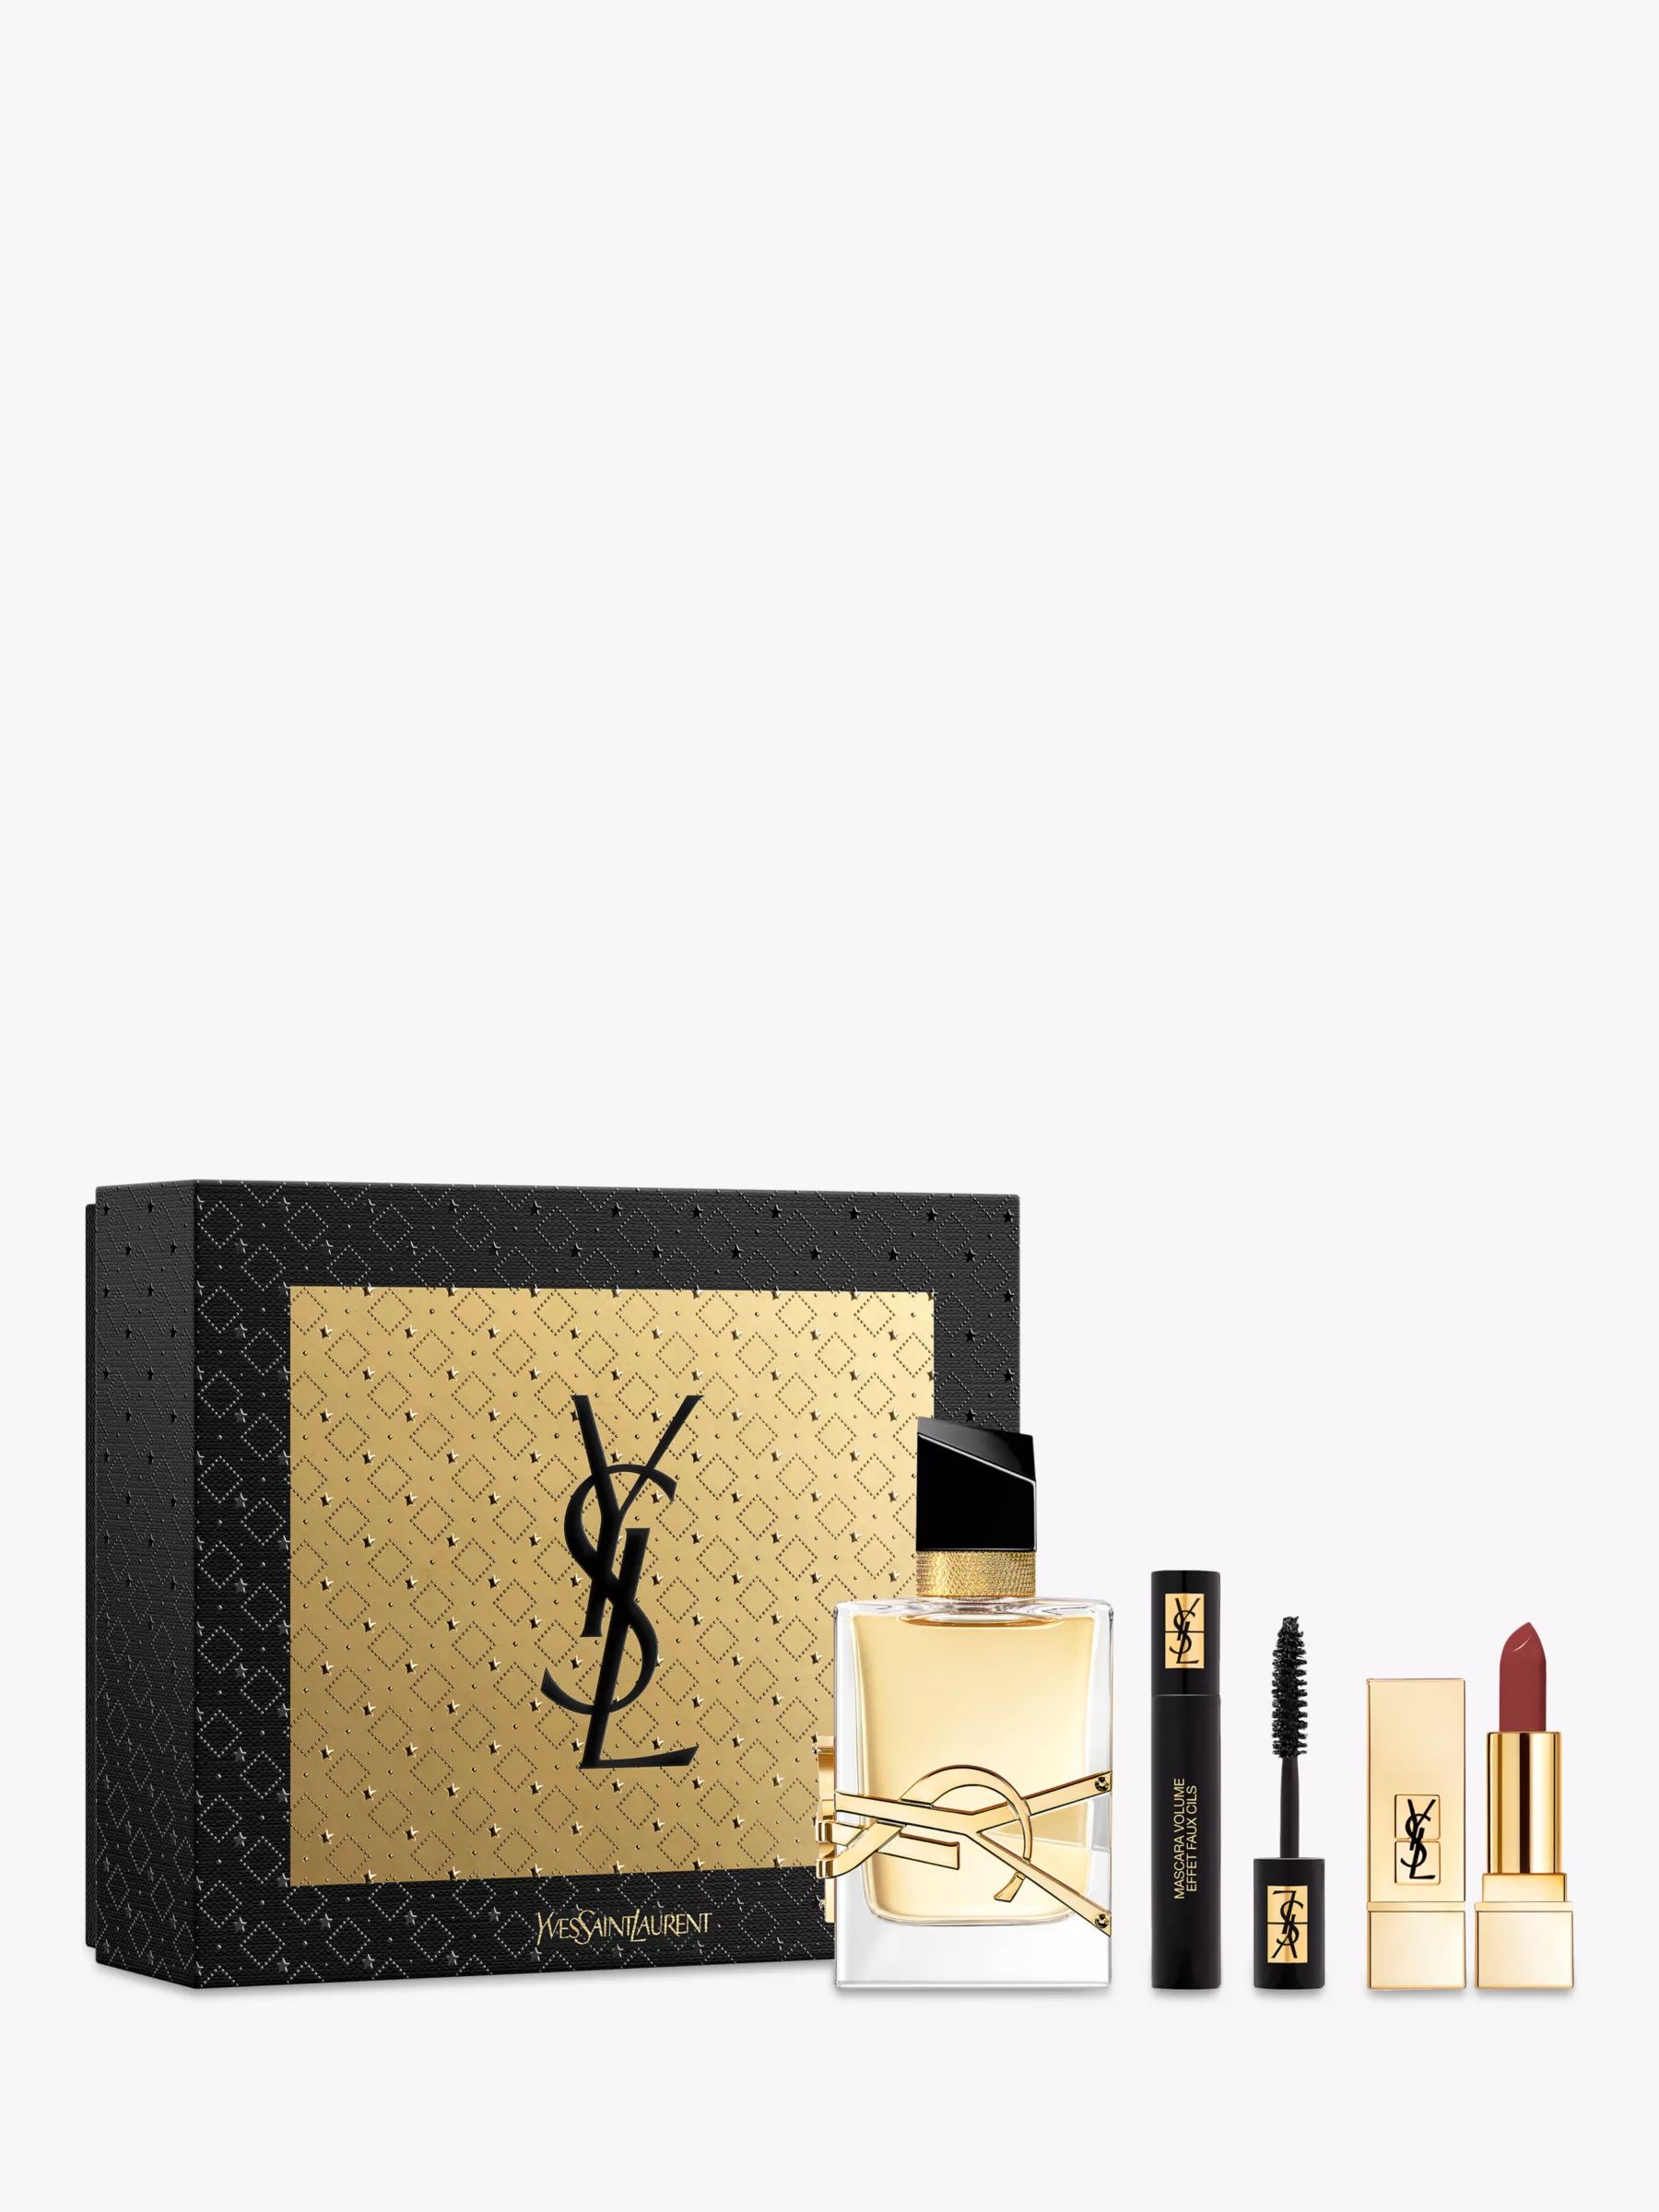 Yves Saint Laurent Libre Eau de Parfum 50ml & Makeup Icons Fragrance Gift Set | John Lewis (UK)